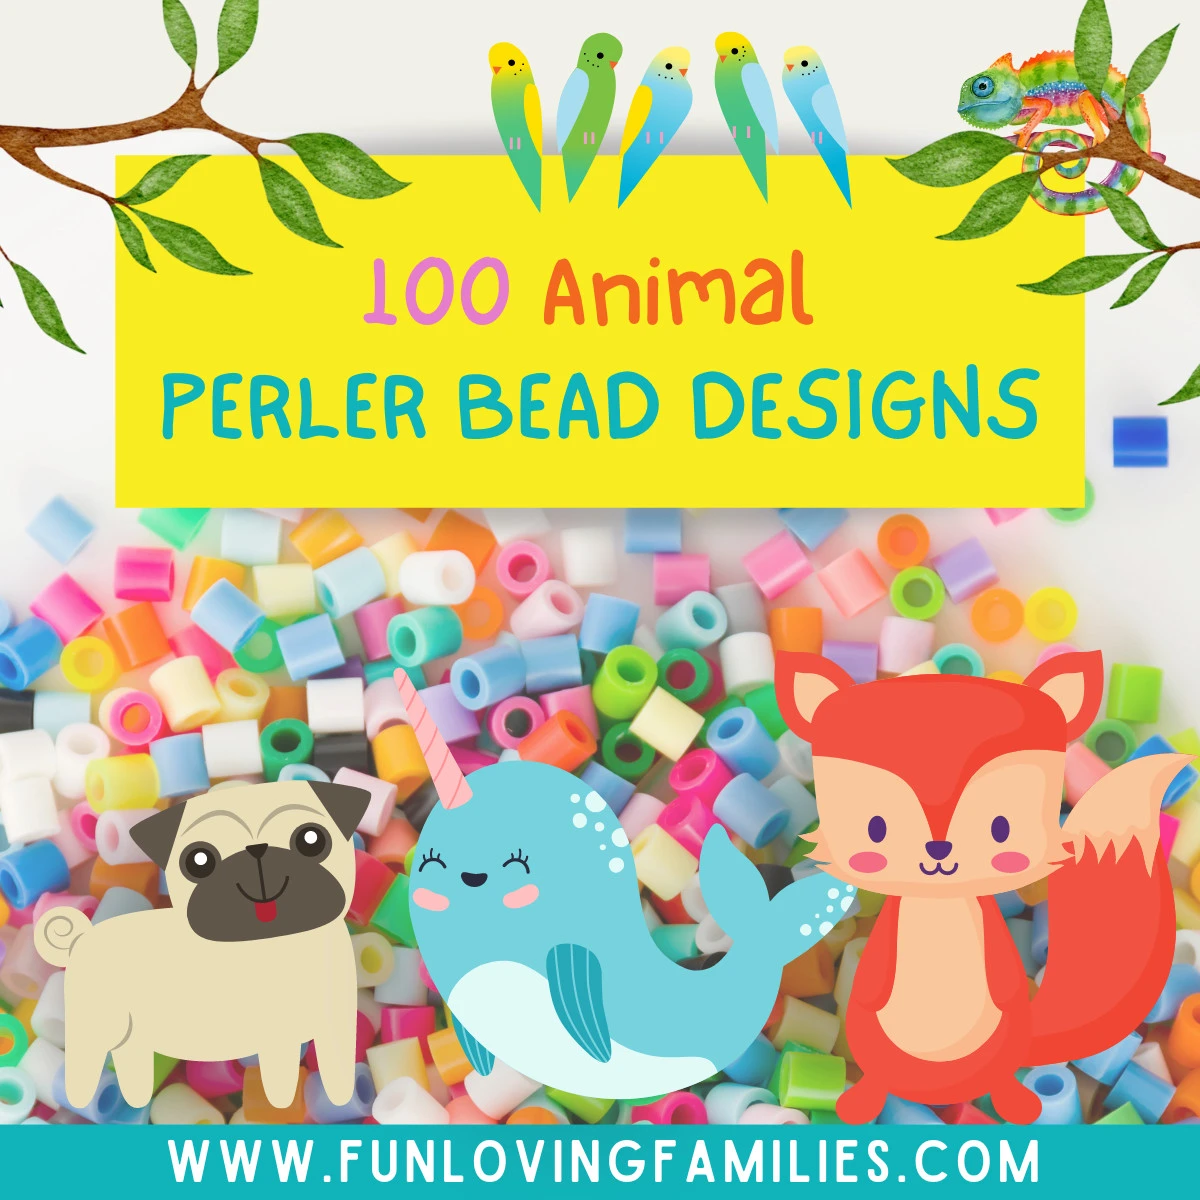 Animal Perler Bead Patterns, Designs